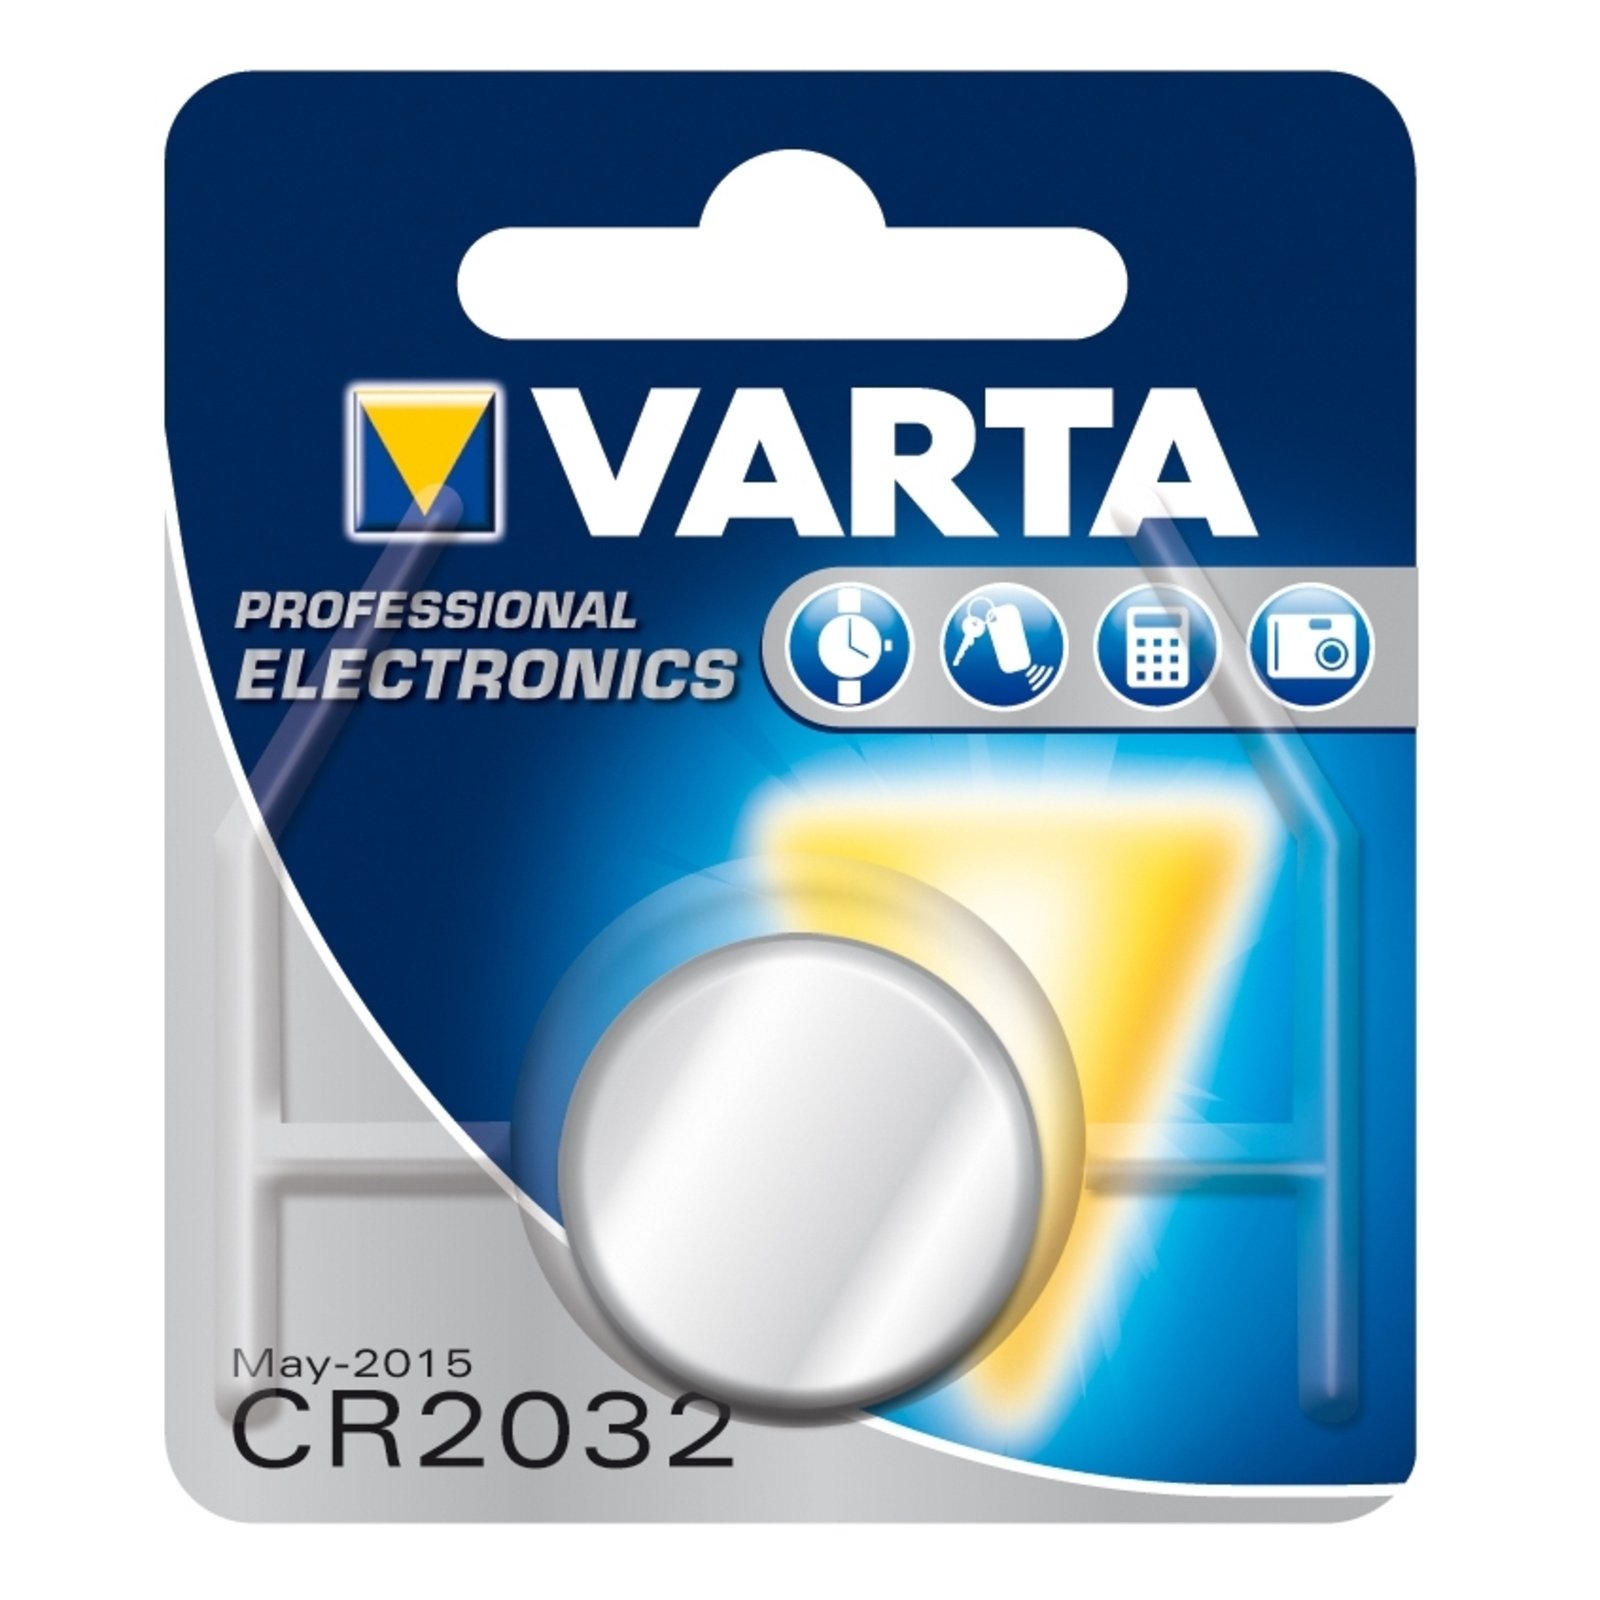 VARTA lithium knoopcel CR2032 3V 220 mAh